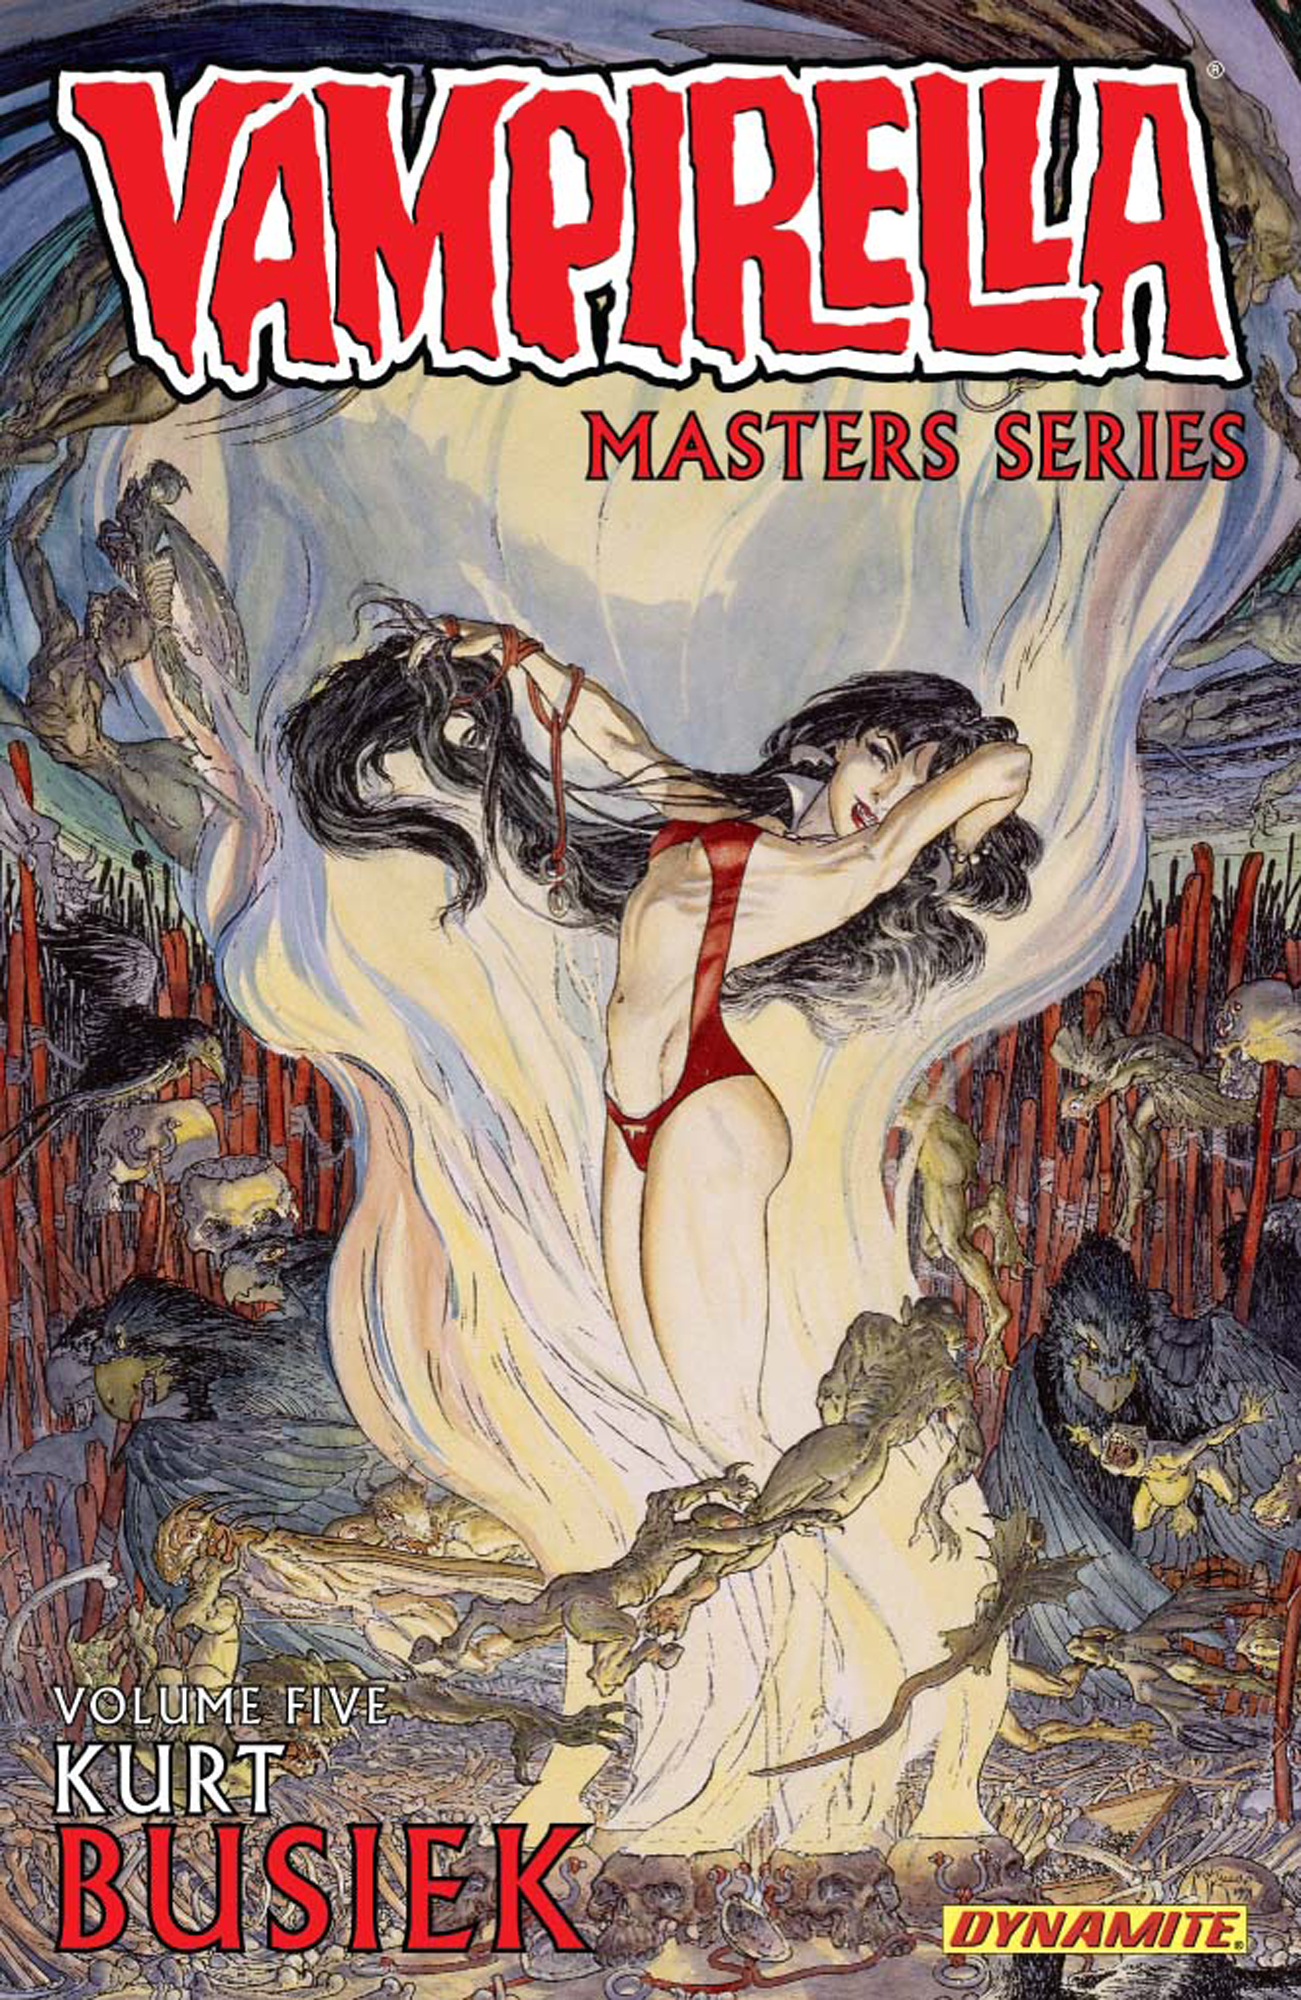 Vampirella Masters Series Graphic Novel Volume 5 Kurt Busiek